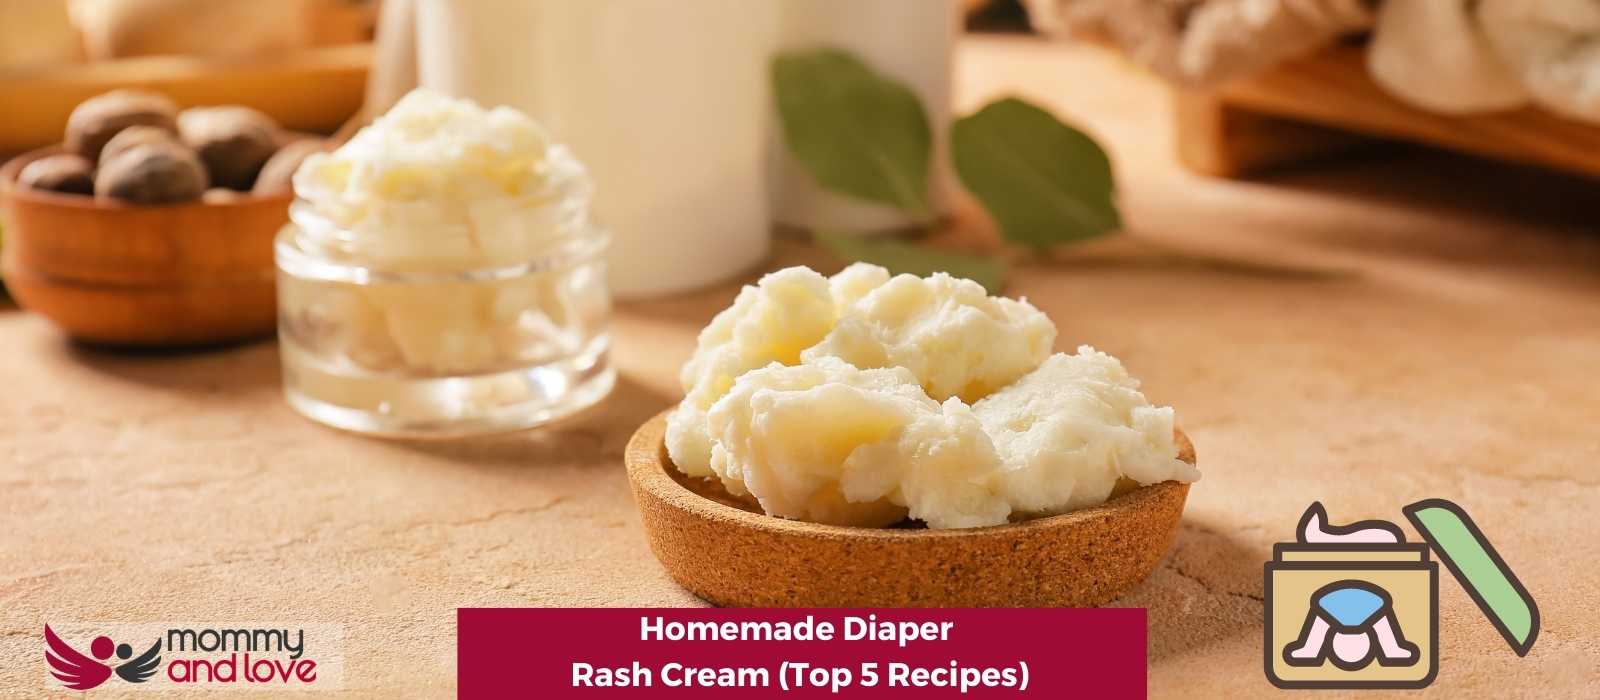 Homemade Diaper Rash Cream (Top 5 Recipes)